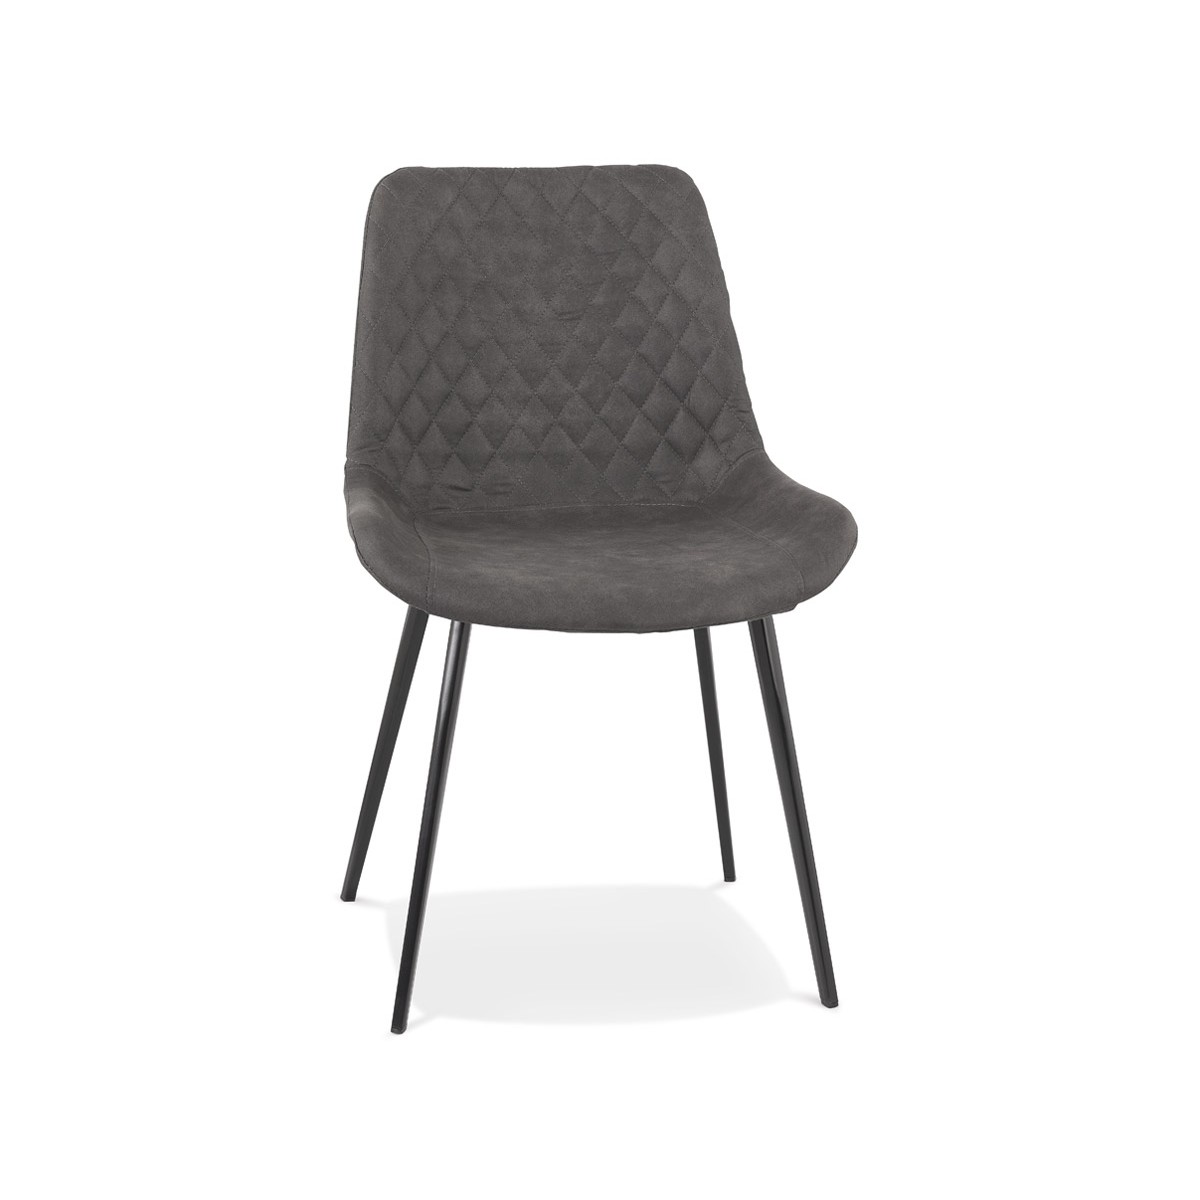 Vintage- und Retro-Stuhl aus schwarzem Metallfuß Mikrofaserfüße schwarz  JALON (dunkelgrau) - AMP Story 9434